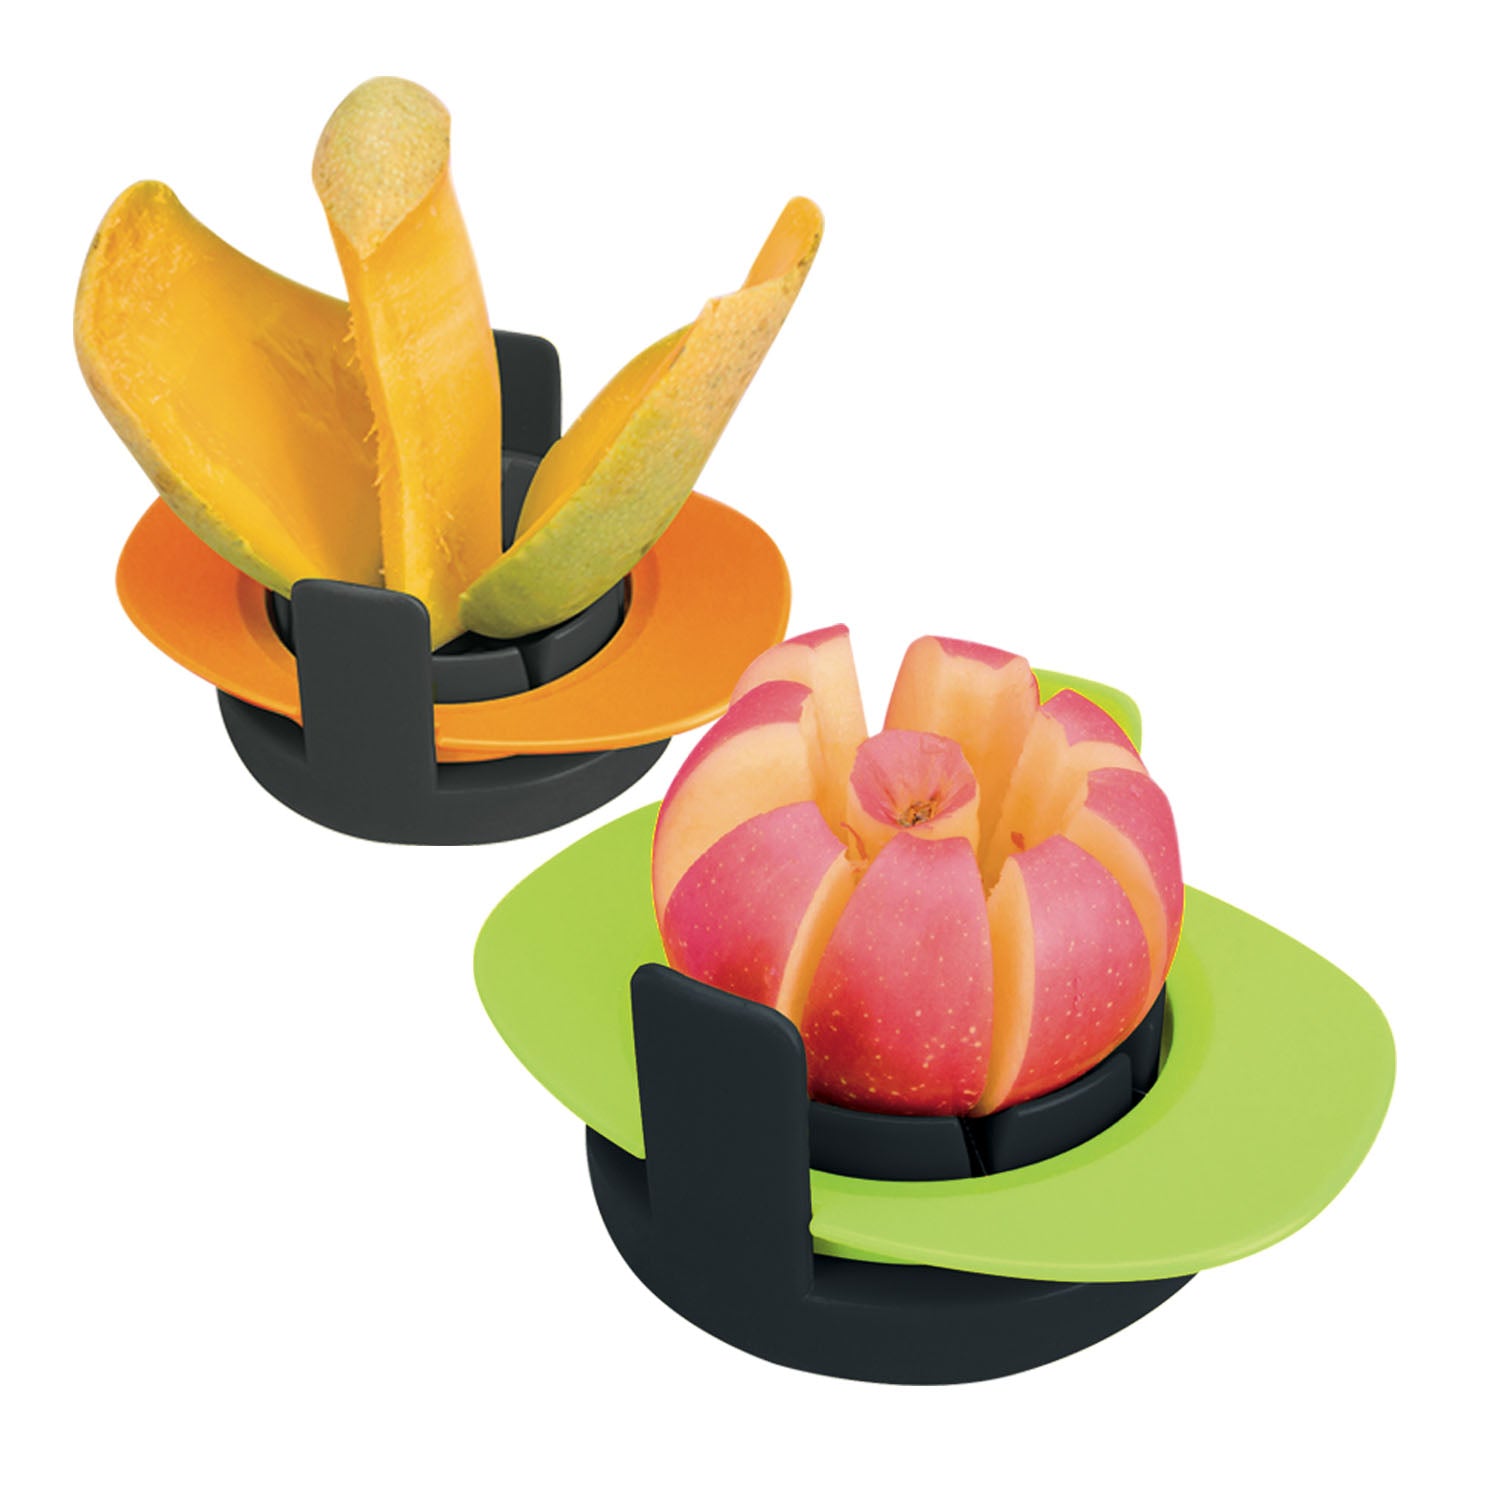 KELOmat Fruit Slicer, 1 Pc